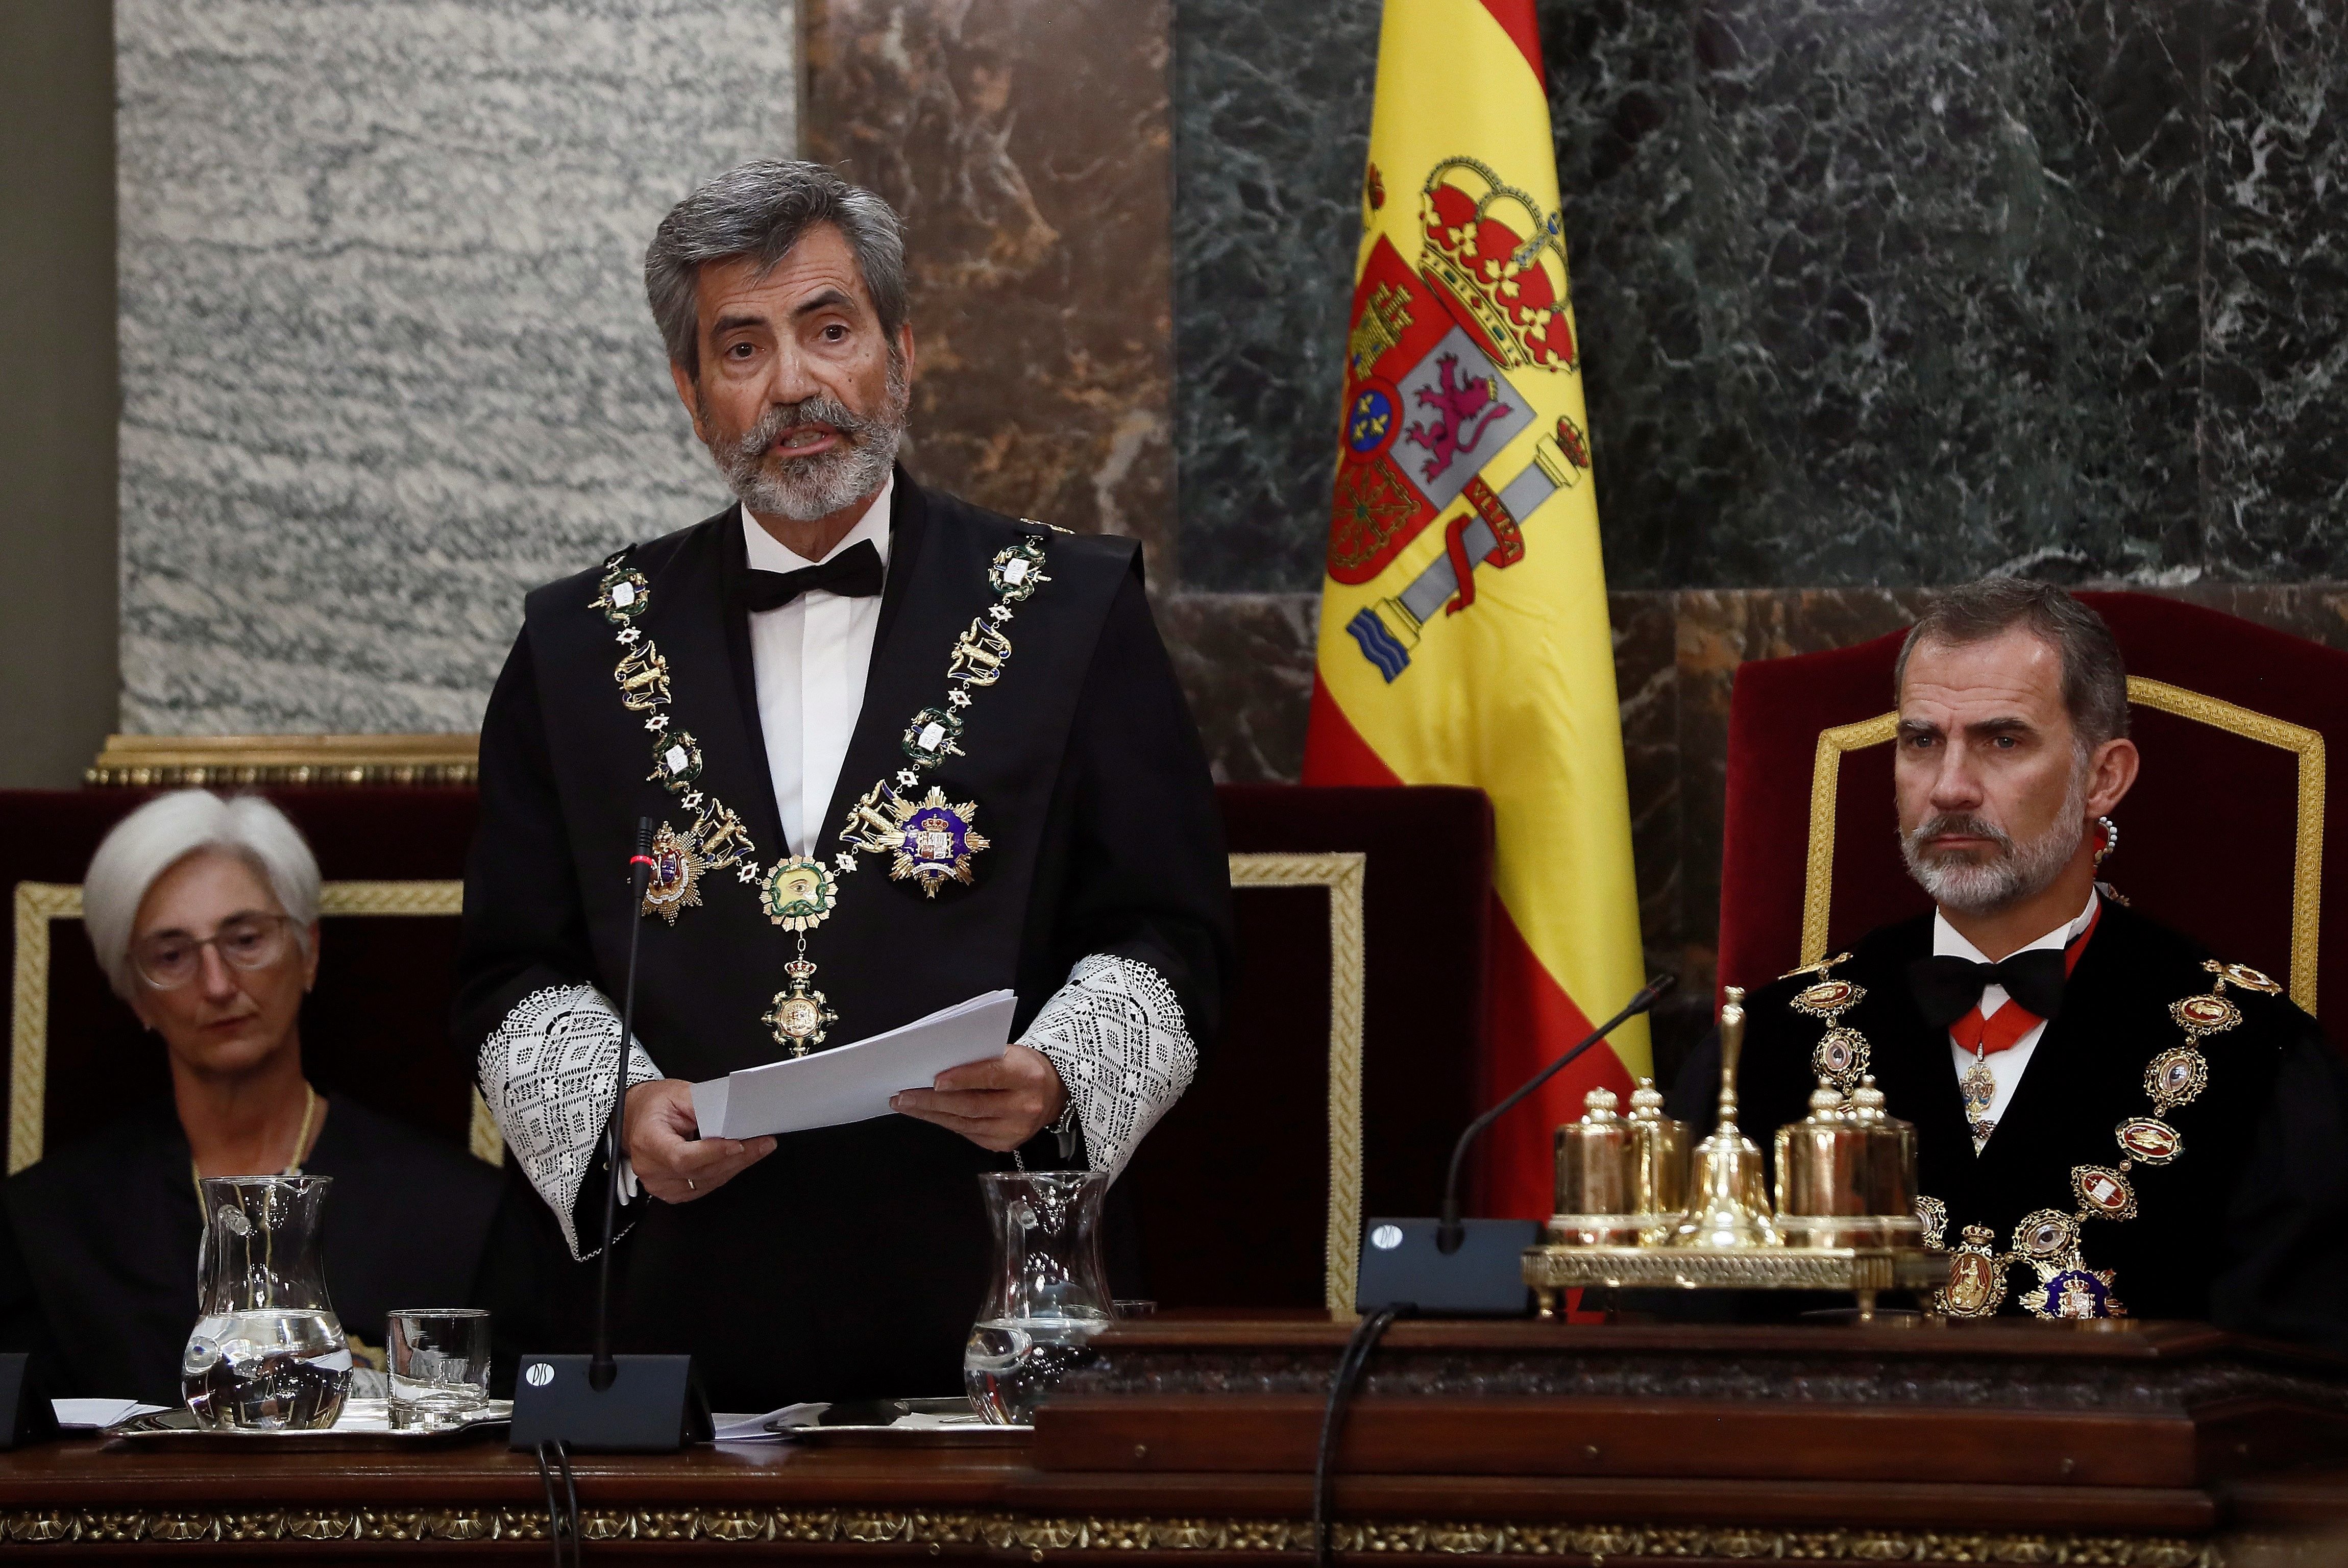 La coalición de los jueces: el Estado en contra que amenaza a Sánchez e Iglesias